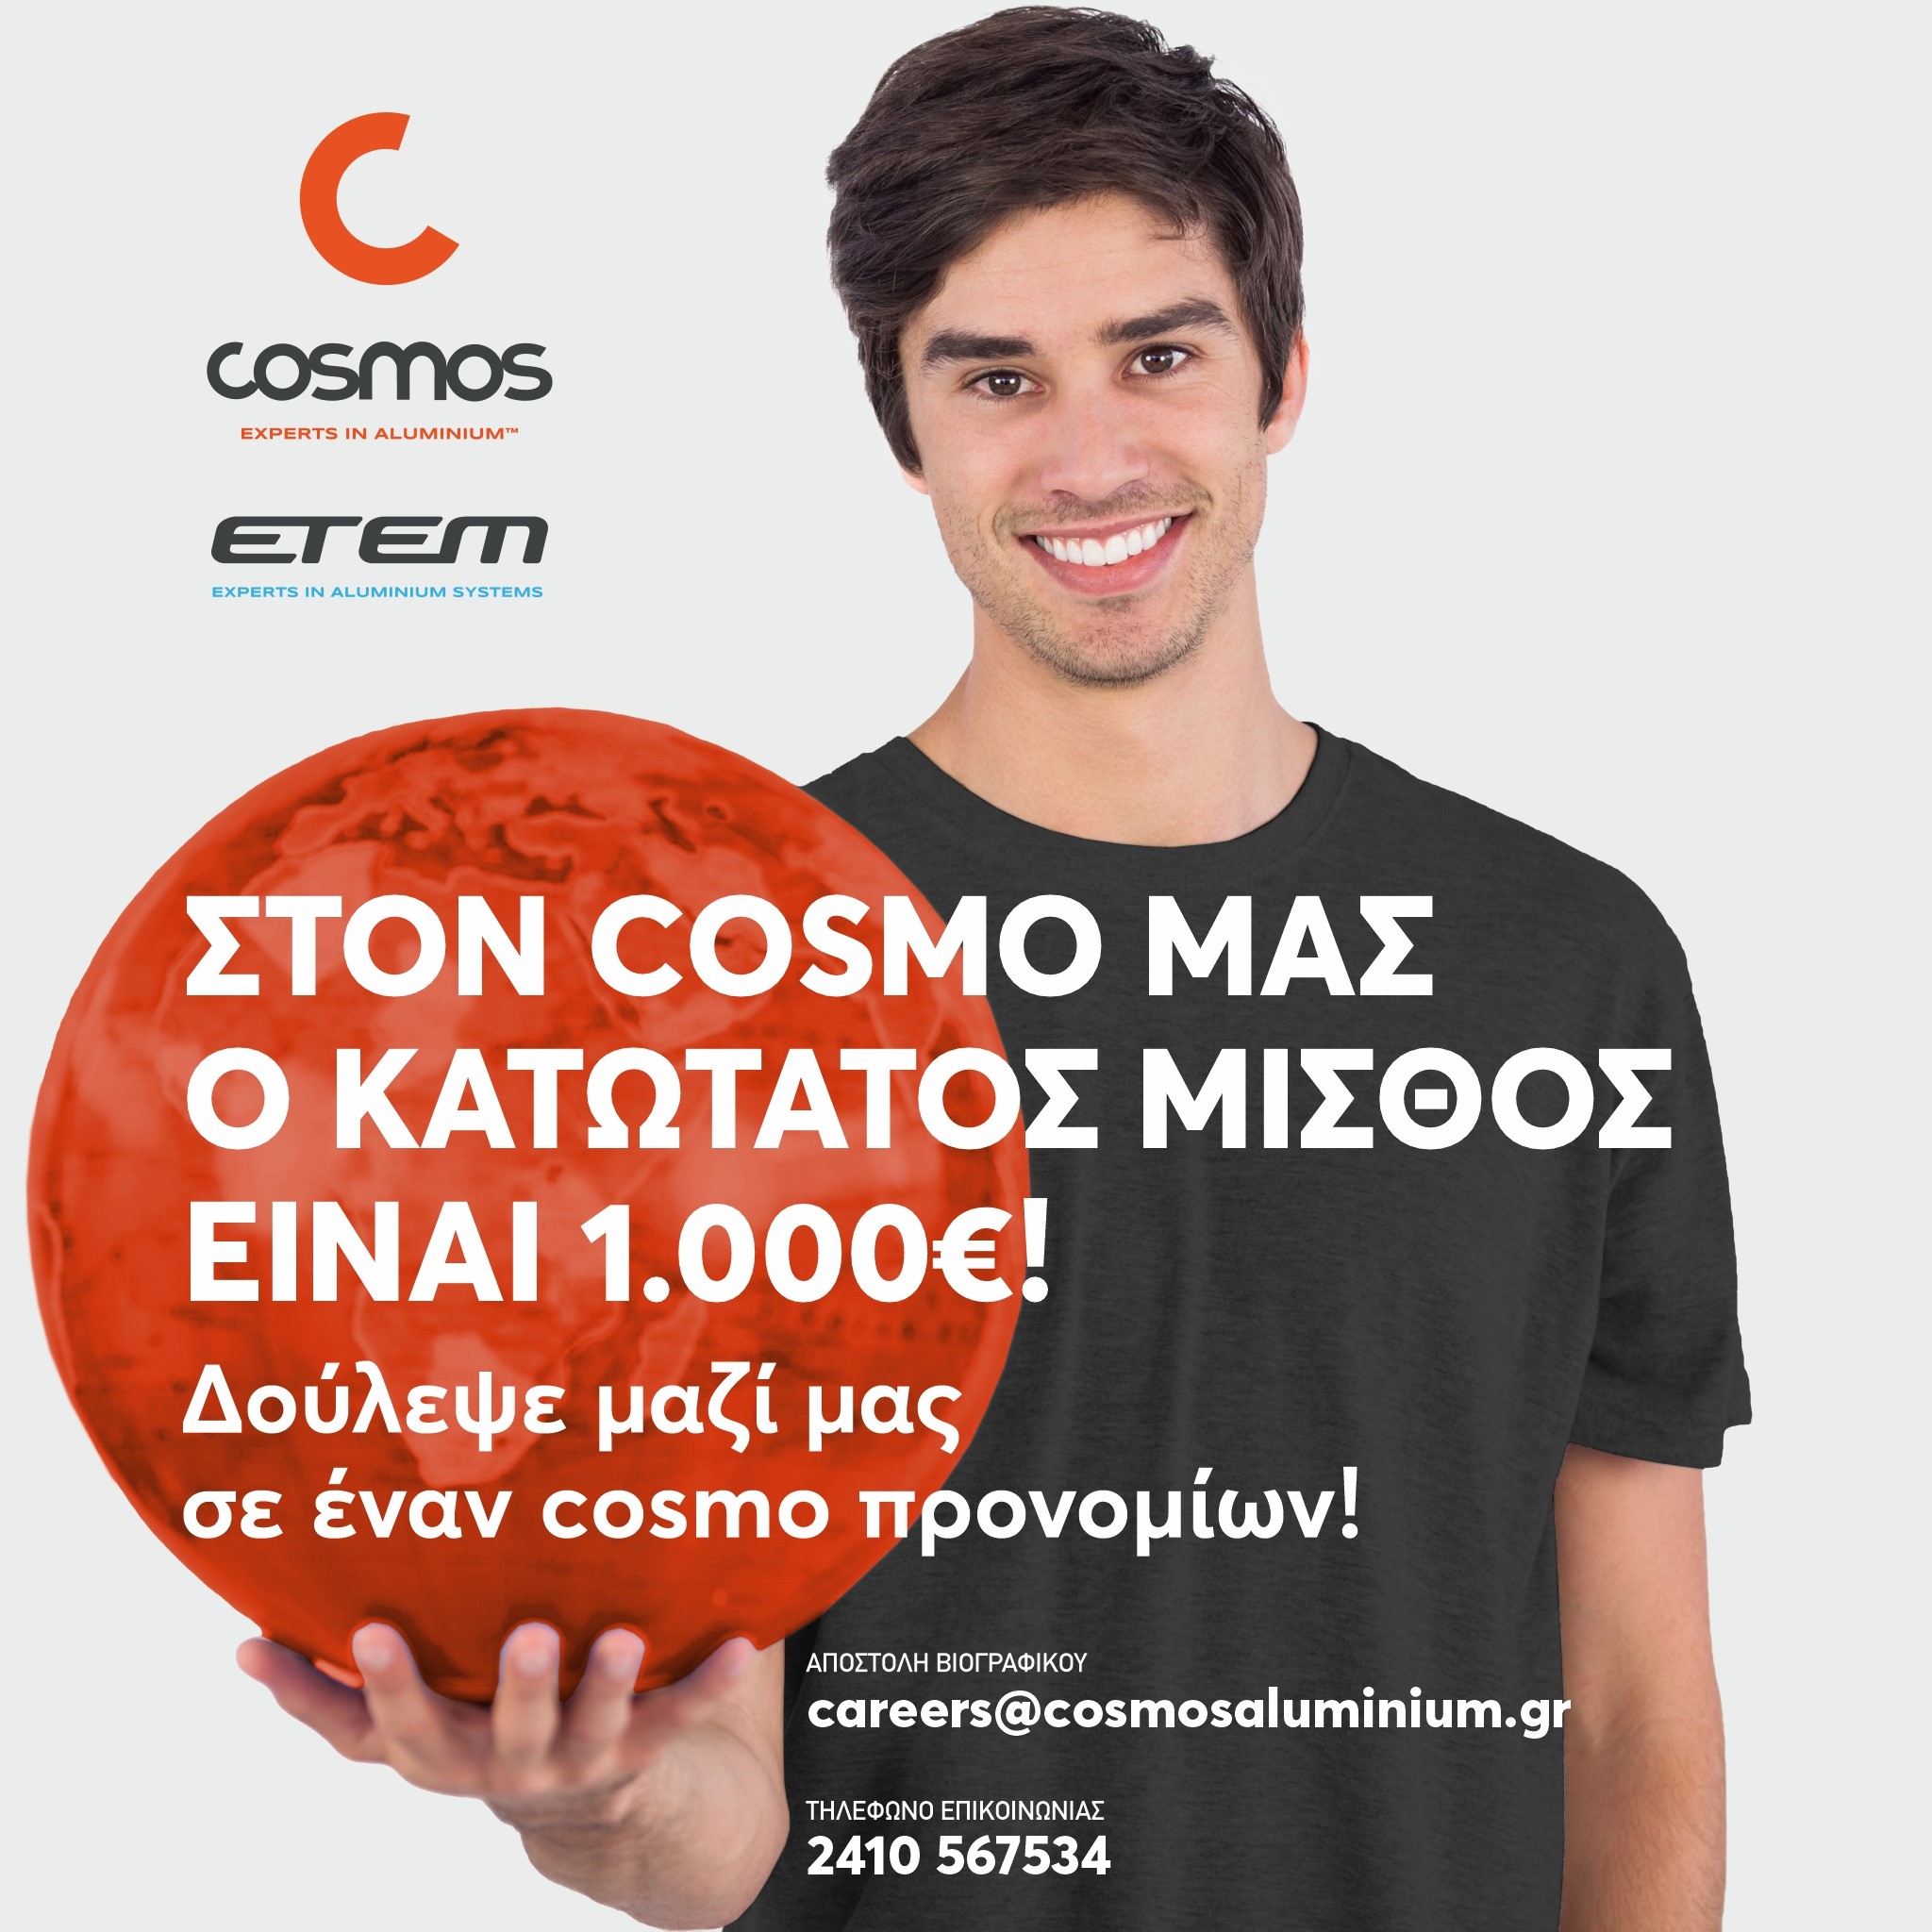 "Κανείς κάτω από 1000 ευρώ στον Cosmo μας!"